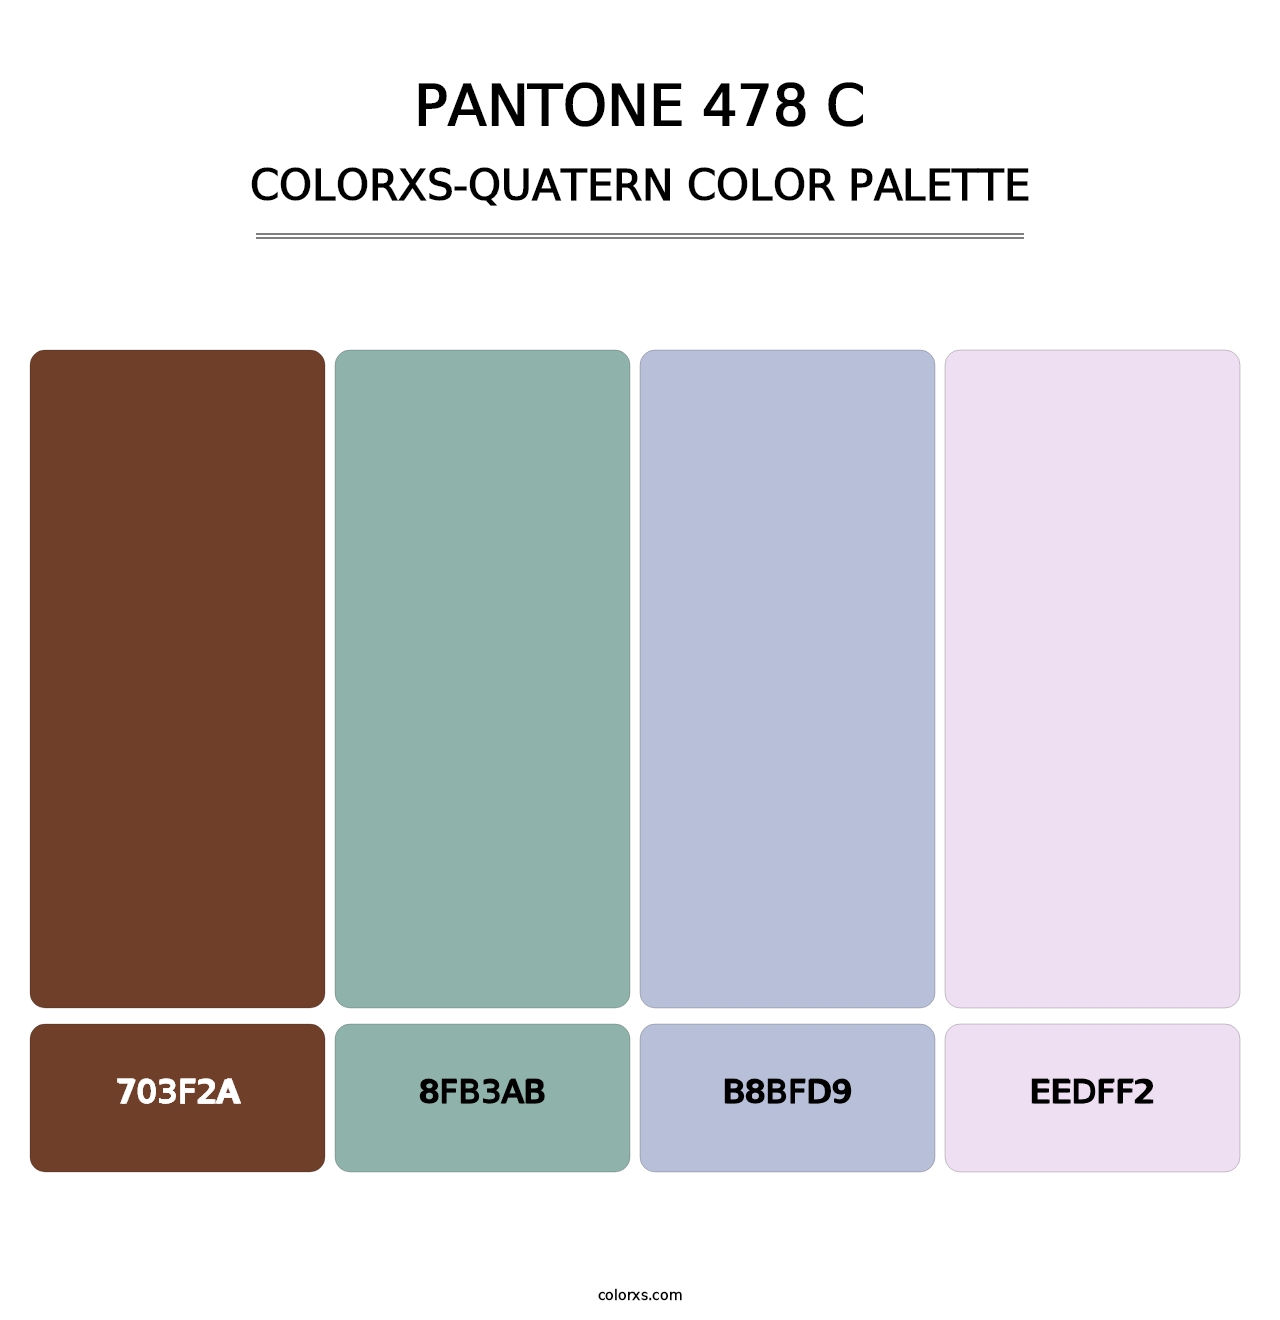 PANTONE 478 C - Colorxs Quatern Palette